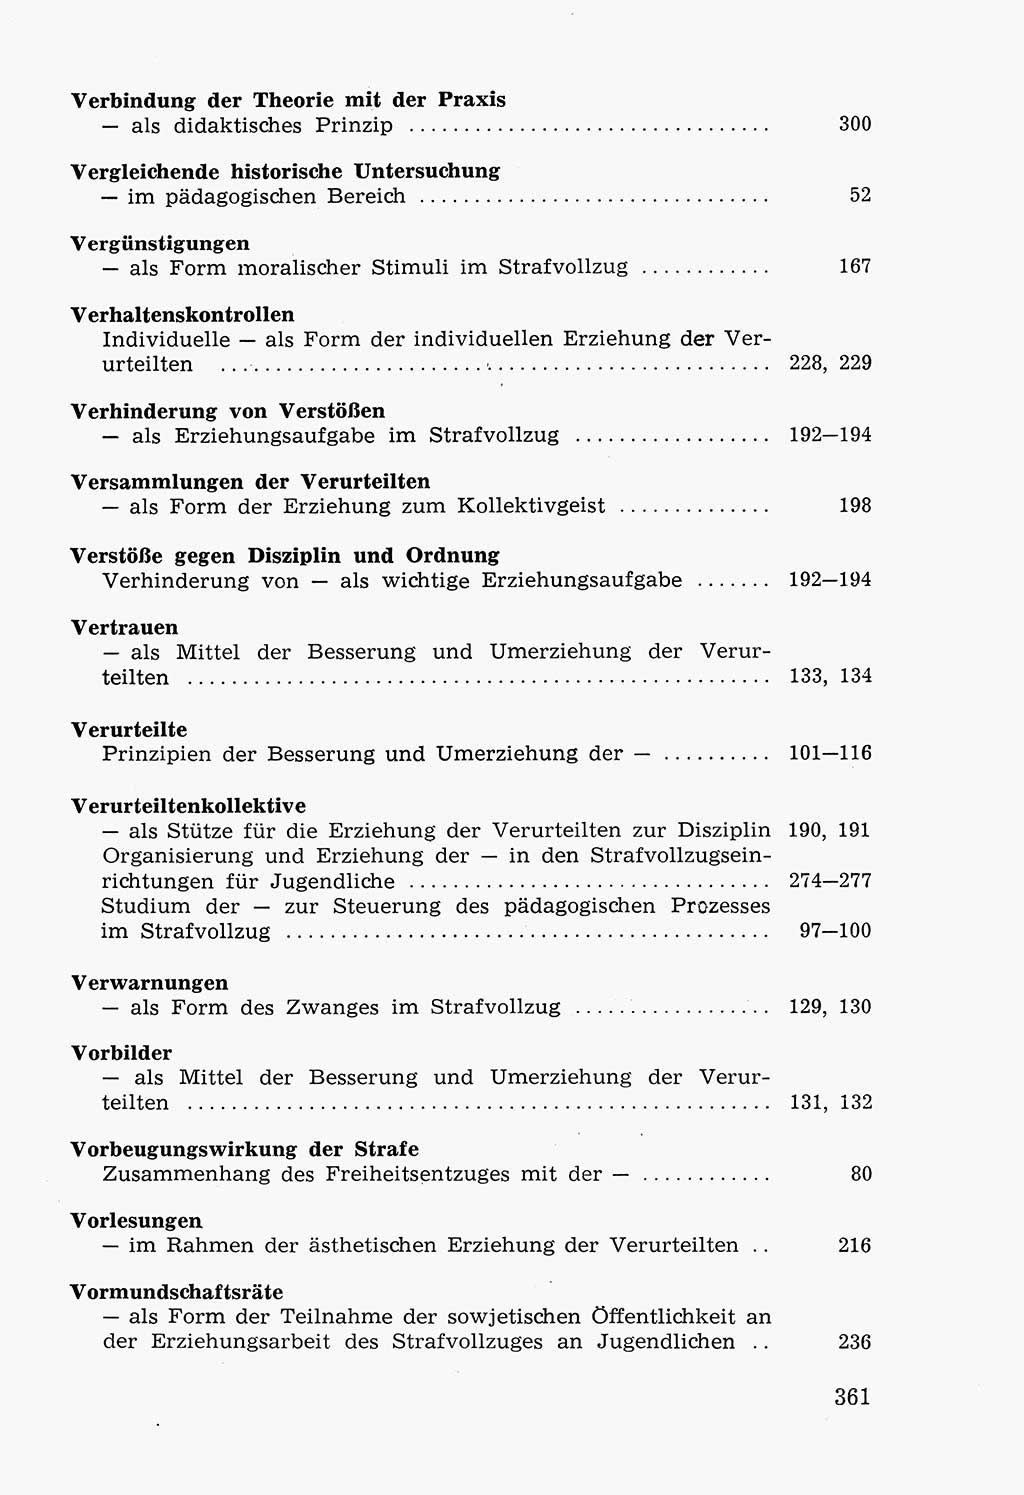 Lehrbuch der Strafvollzugspädagogik [Deutsche Demokratische Republik (DDR)] 1969, Seite 361 (Lb. SV-Pd. DDR 1969, S. 361)